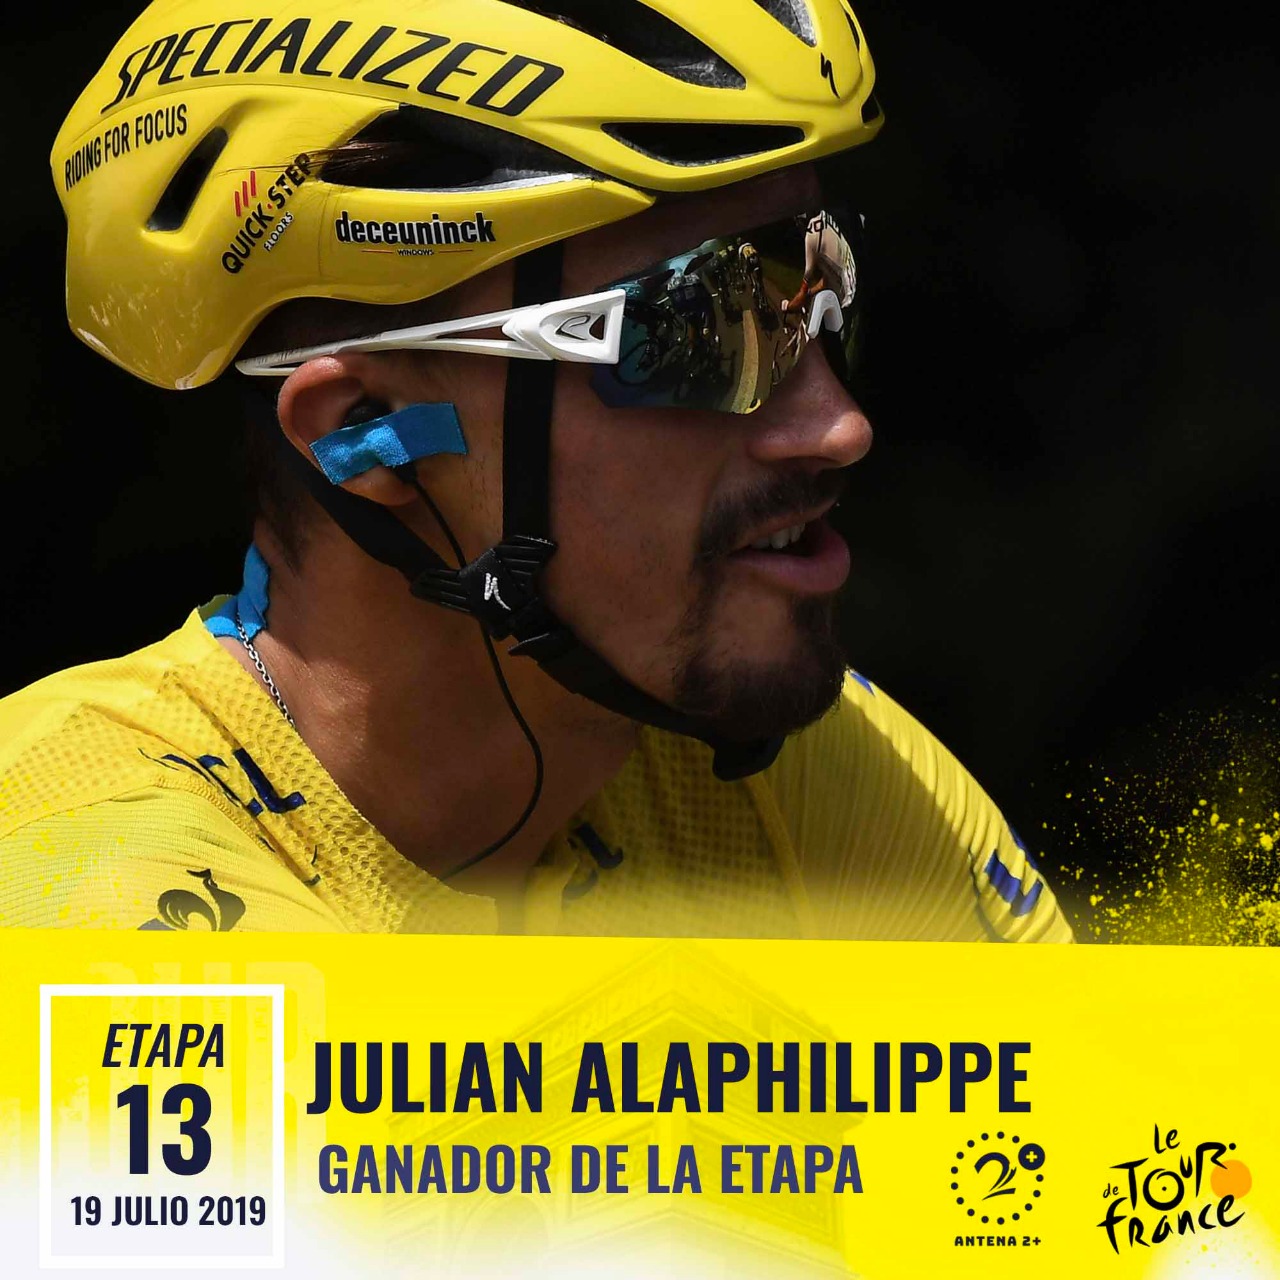 Julian Alaphilippe ganó la contrarreloj individual en la etapa 13 del Tour de Francia